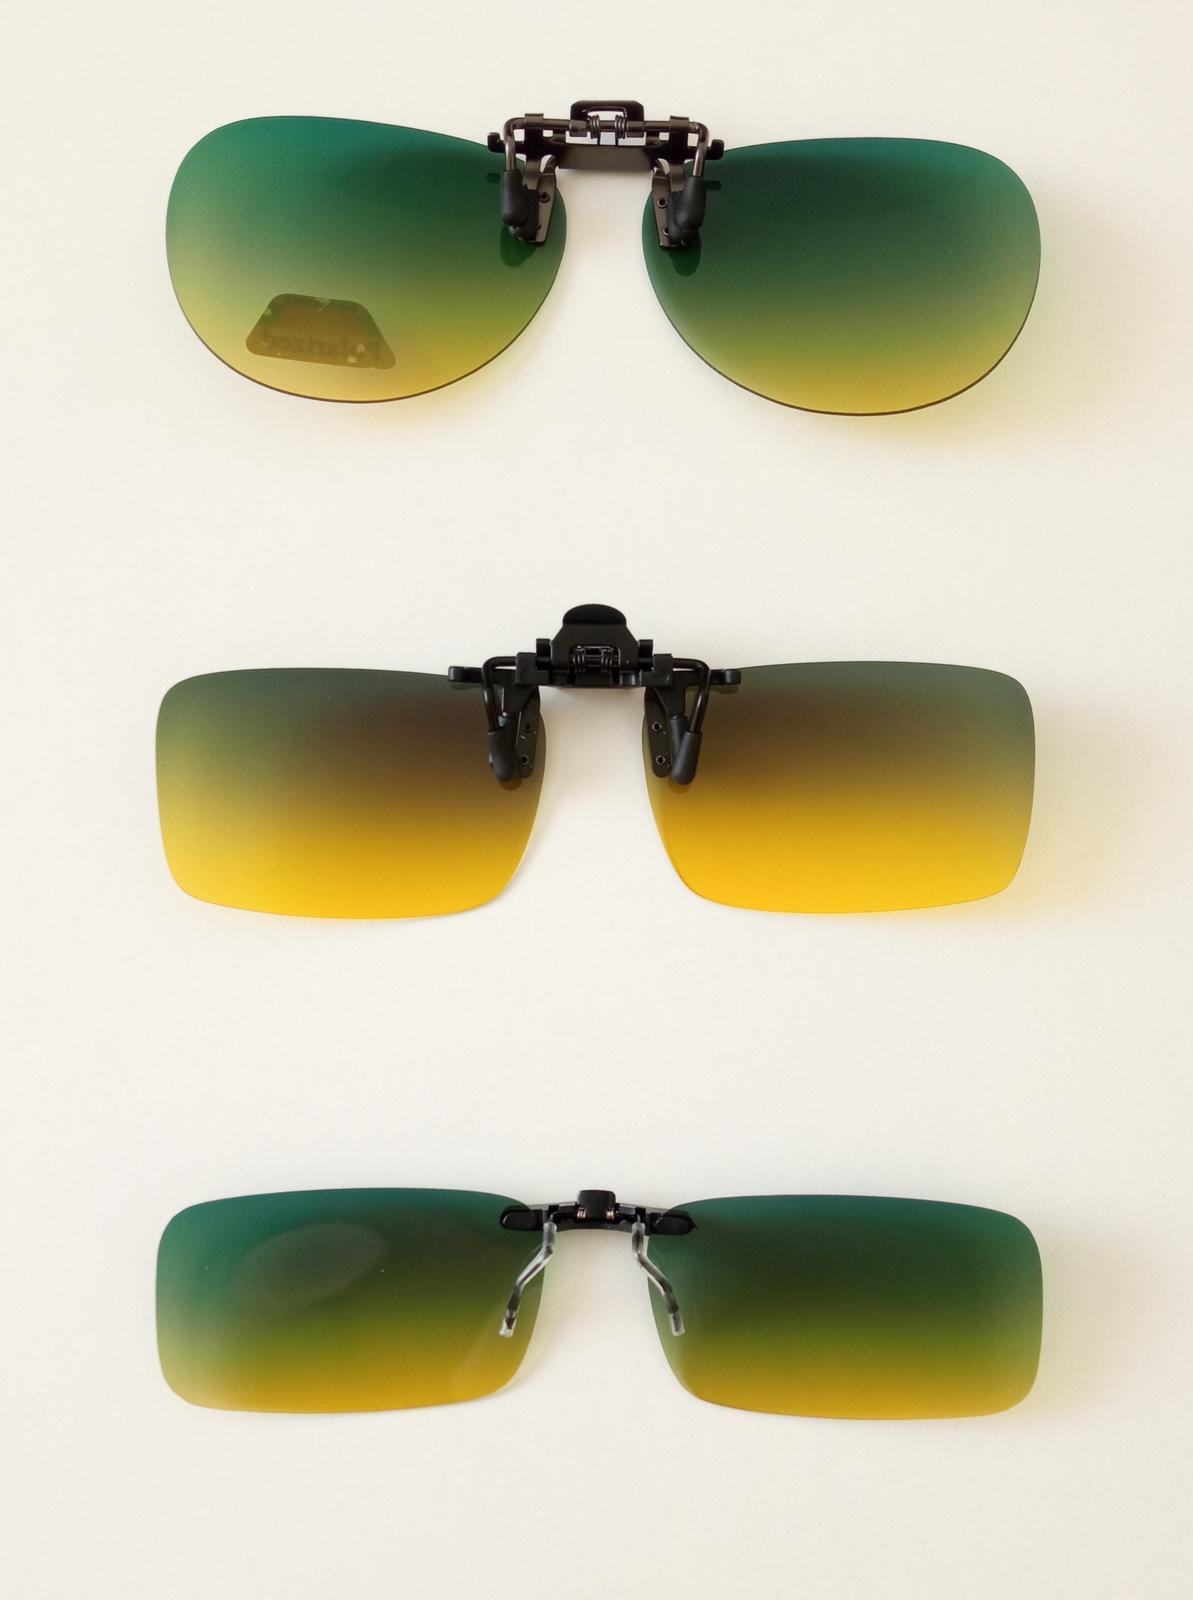 klip na dioptrie, okuliare filtrom UV 400 žlto zelené - Obrázok č. 1